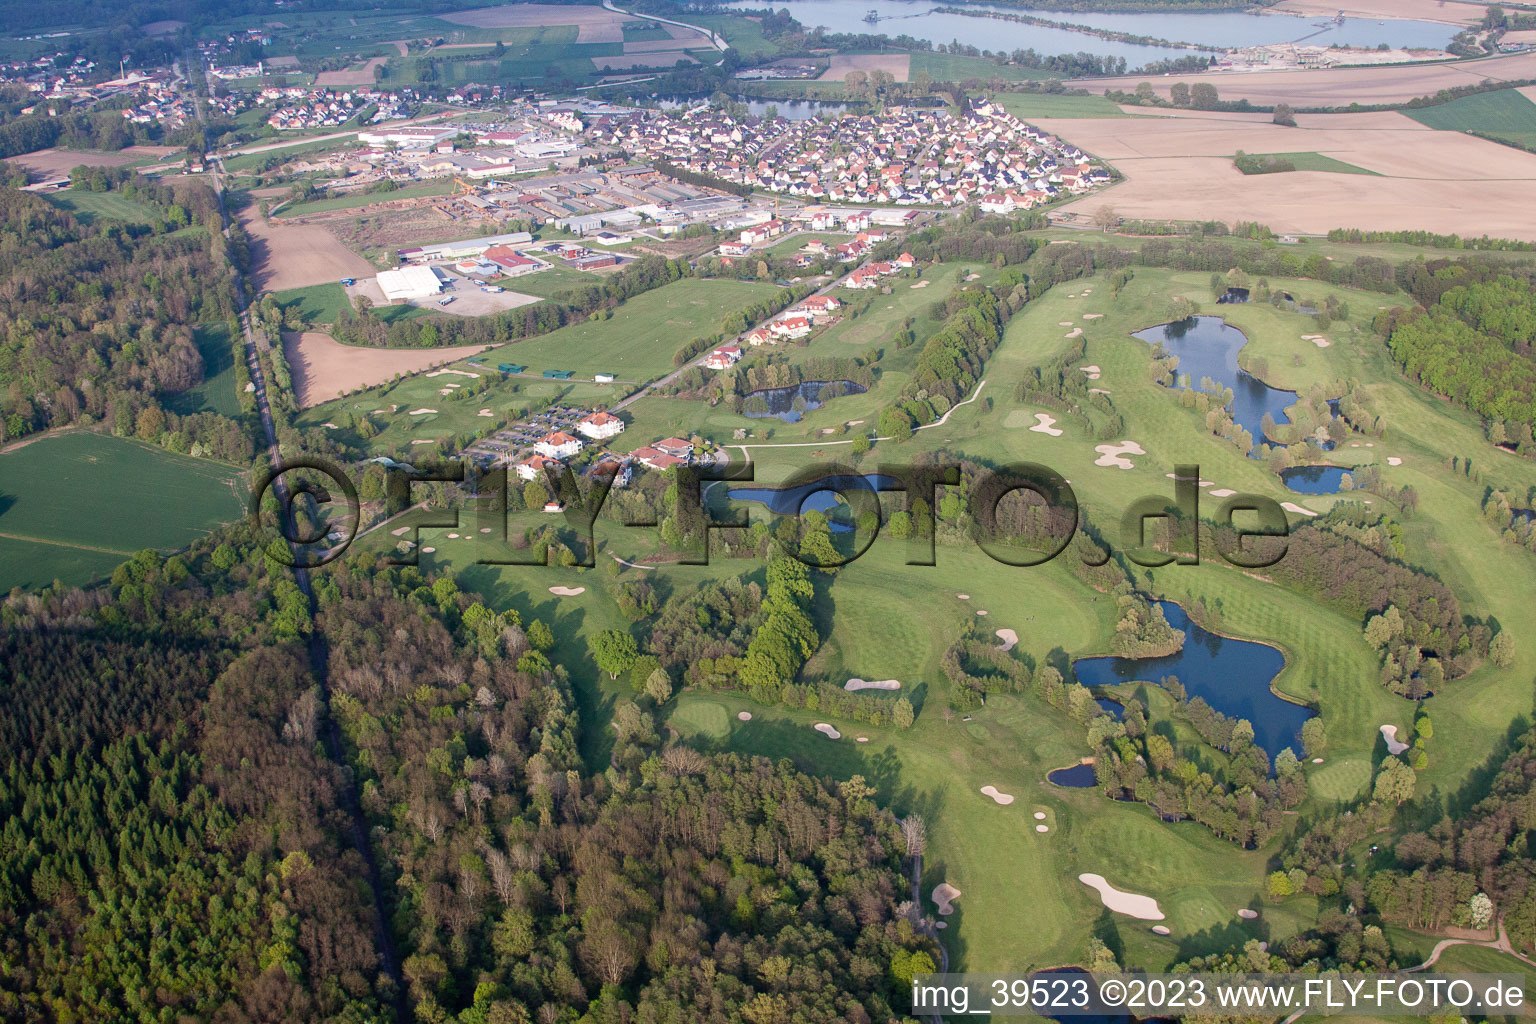 Vue d'oiseau de Club de golf Soufflenheim Baden-Baden à Soufflenheim dans le département Bas Rhin, France